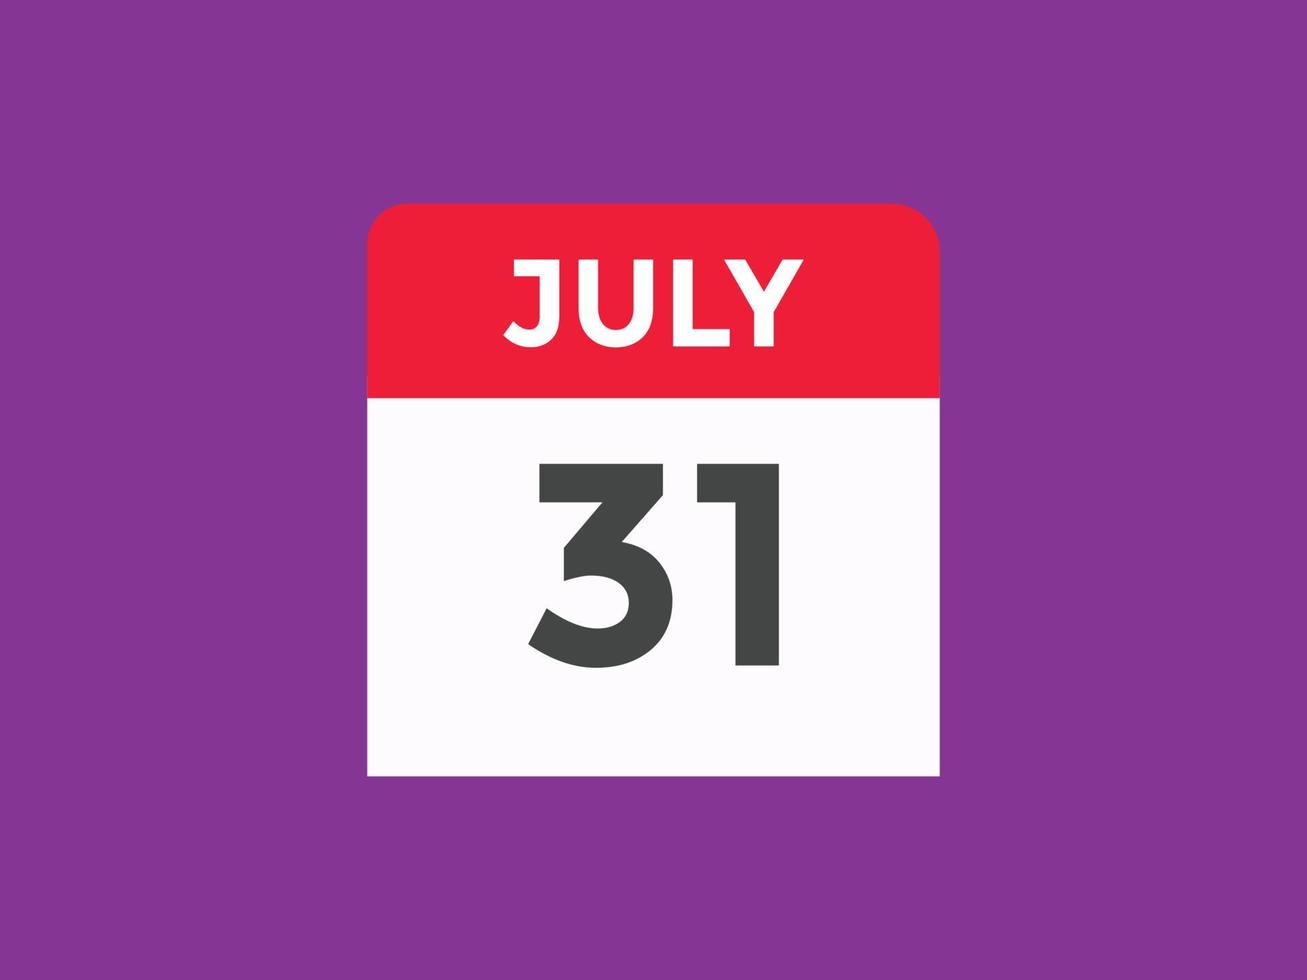 lembrete de calendário de 31 de julho. Modelo de ícone de calendário diário de 31 de julho. modelo de design de ícone de calendário 31 de julho. ilustração vetorial vetor